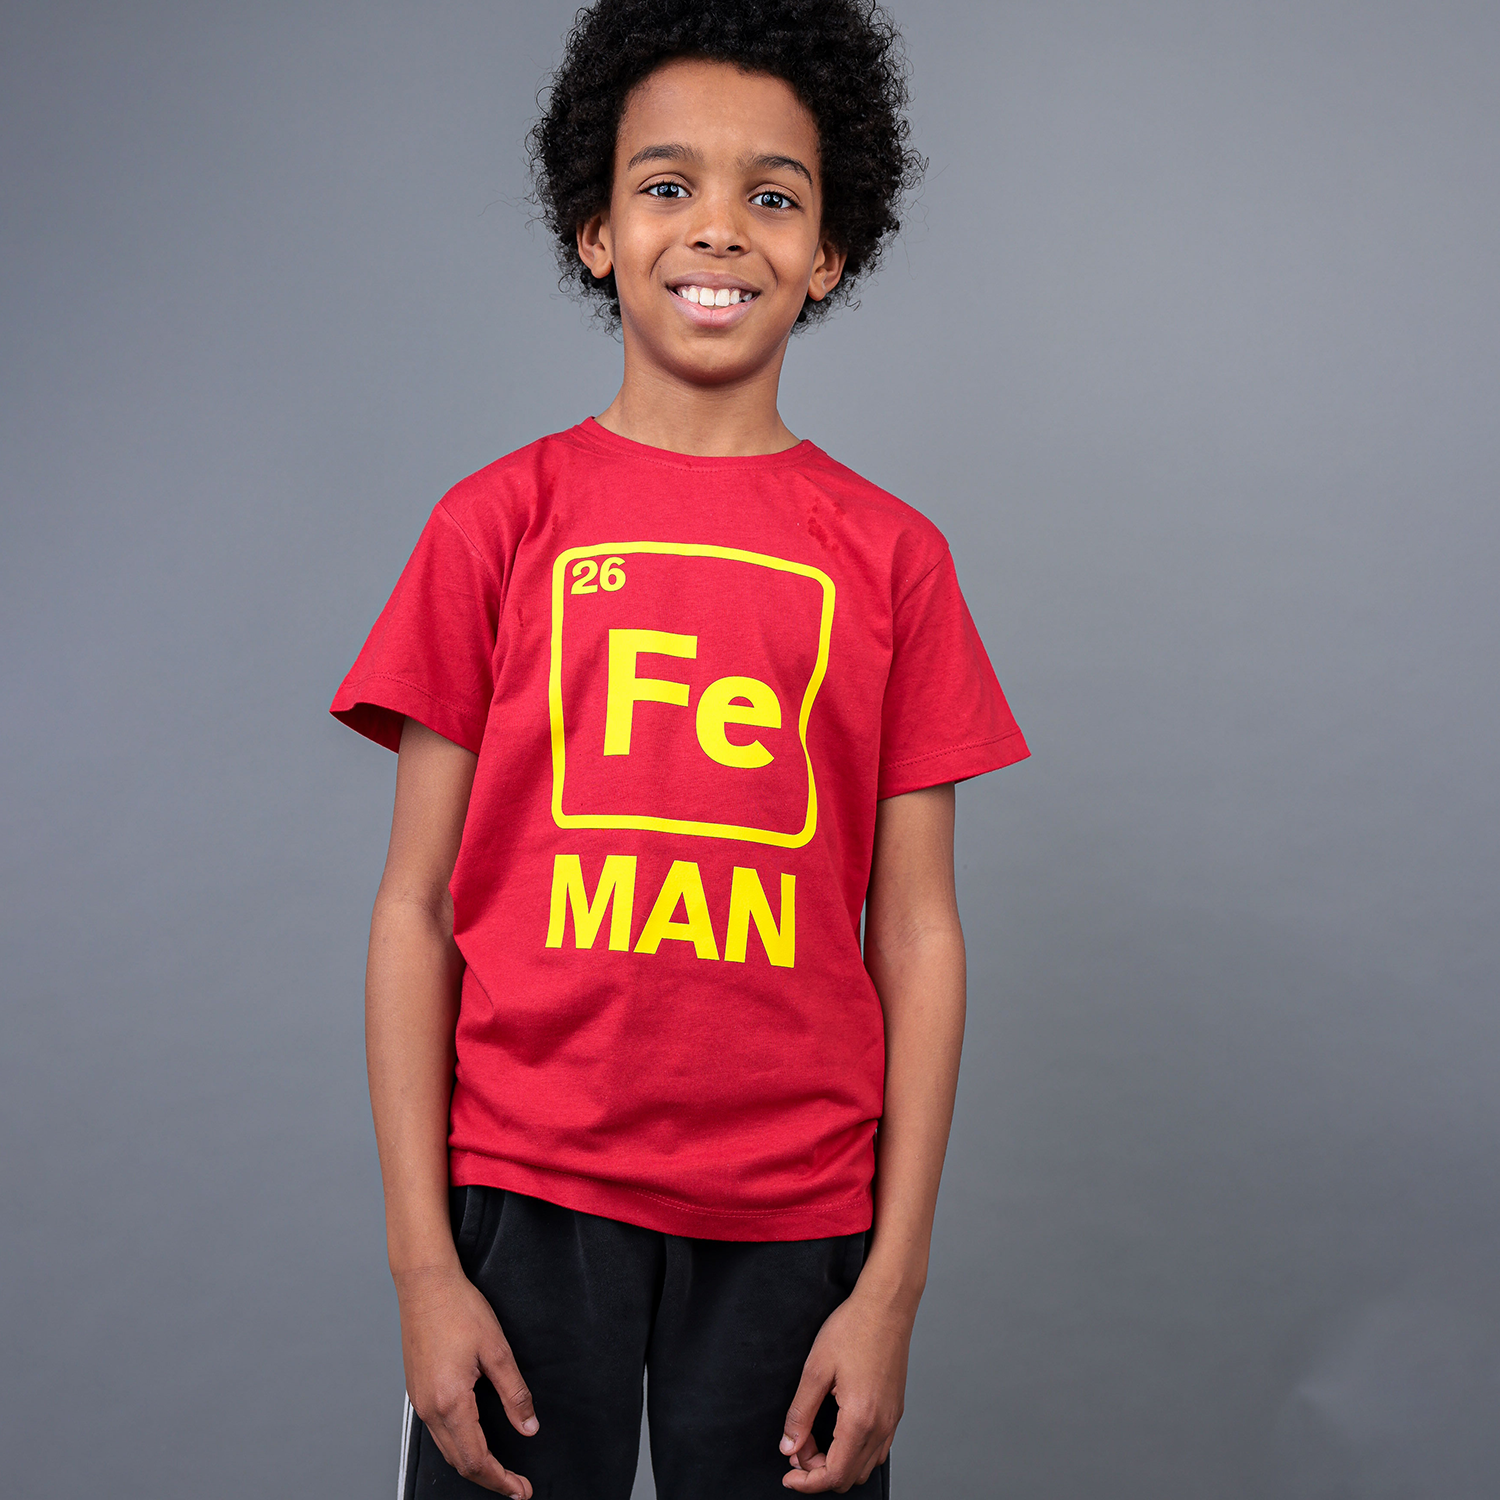 'Fe man' kids shortsleeve shirt